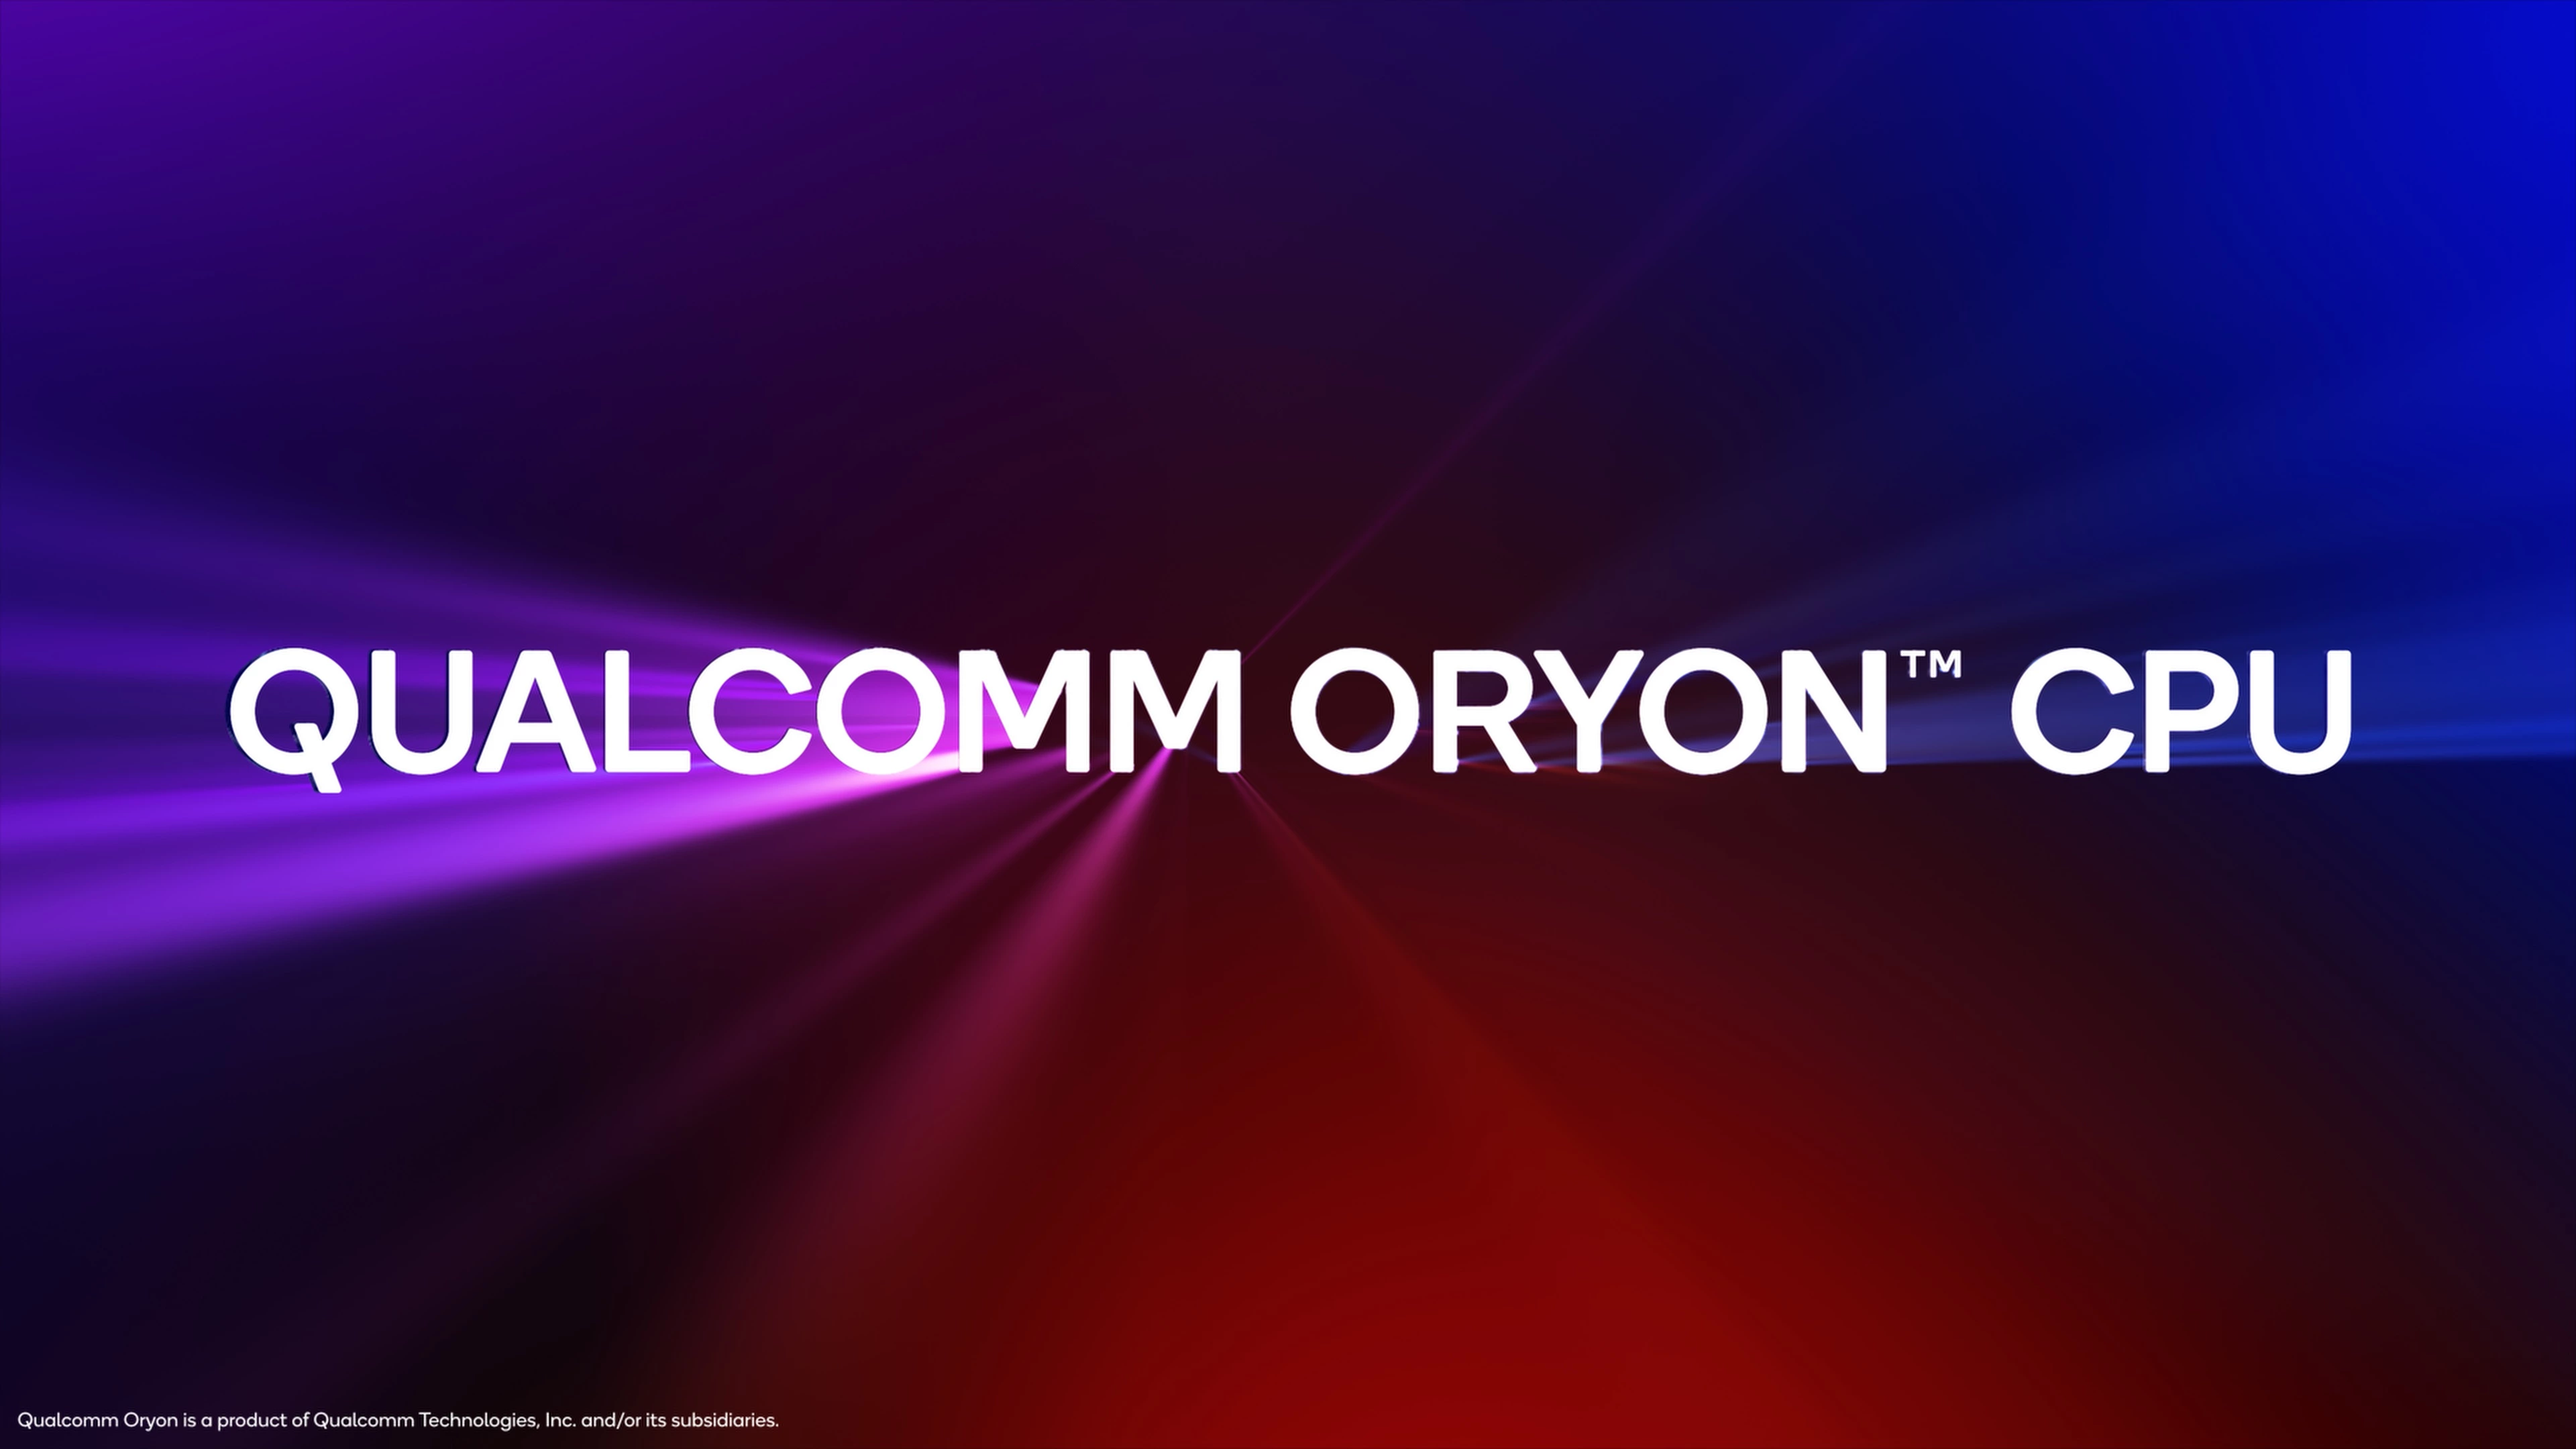 По имеющимся данным, готовящиеся к выпуску процессоры Oryon компании Qualcomm вызвали разногласия среди производителей ПК